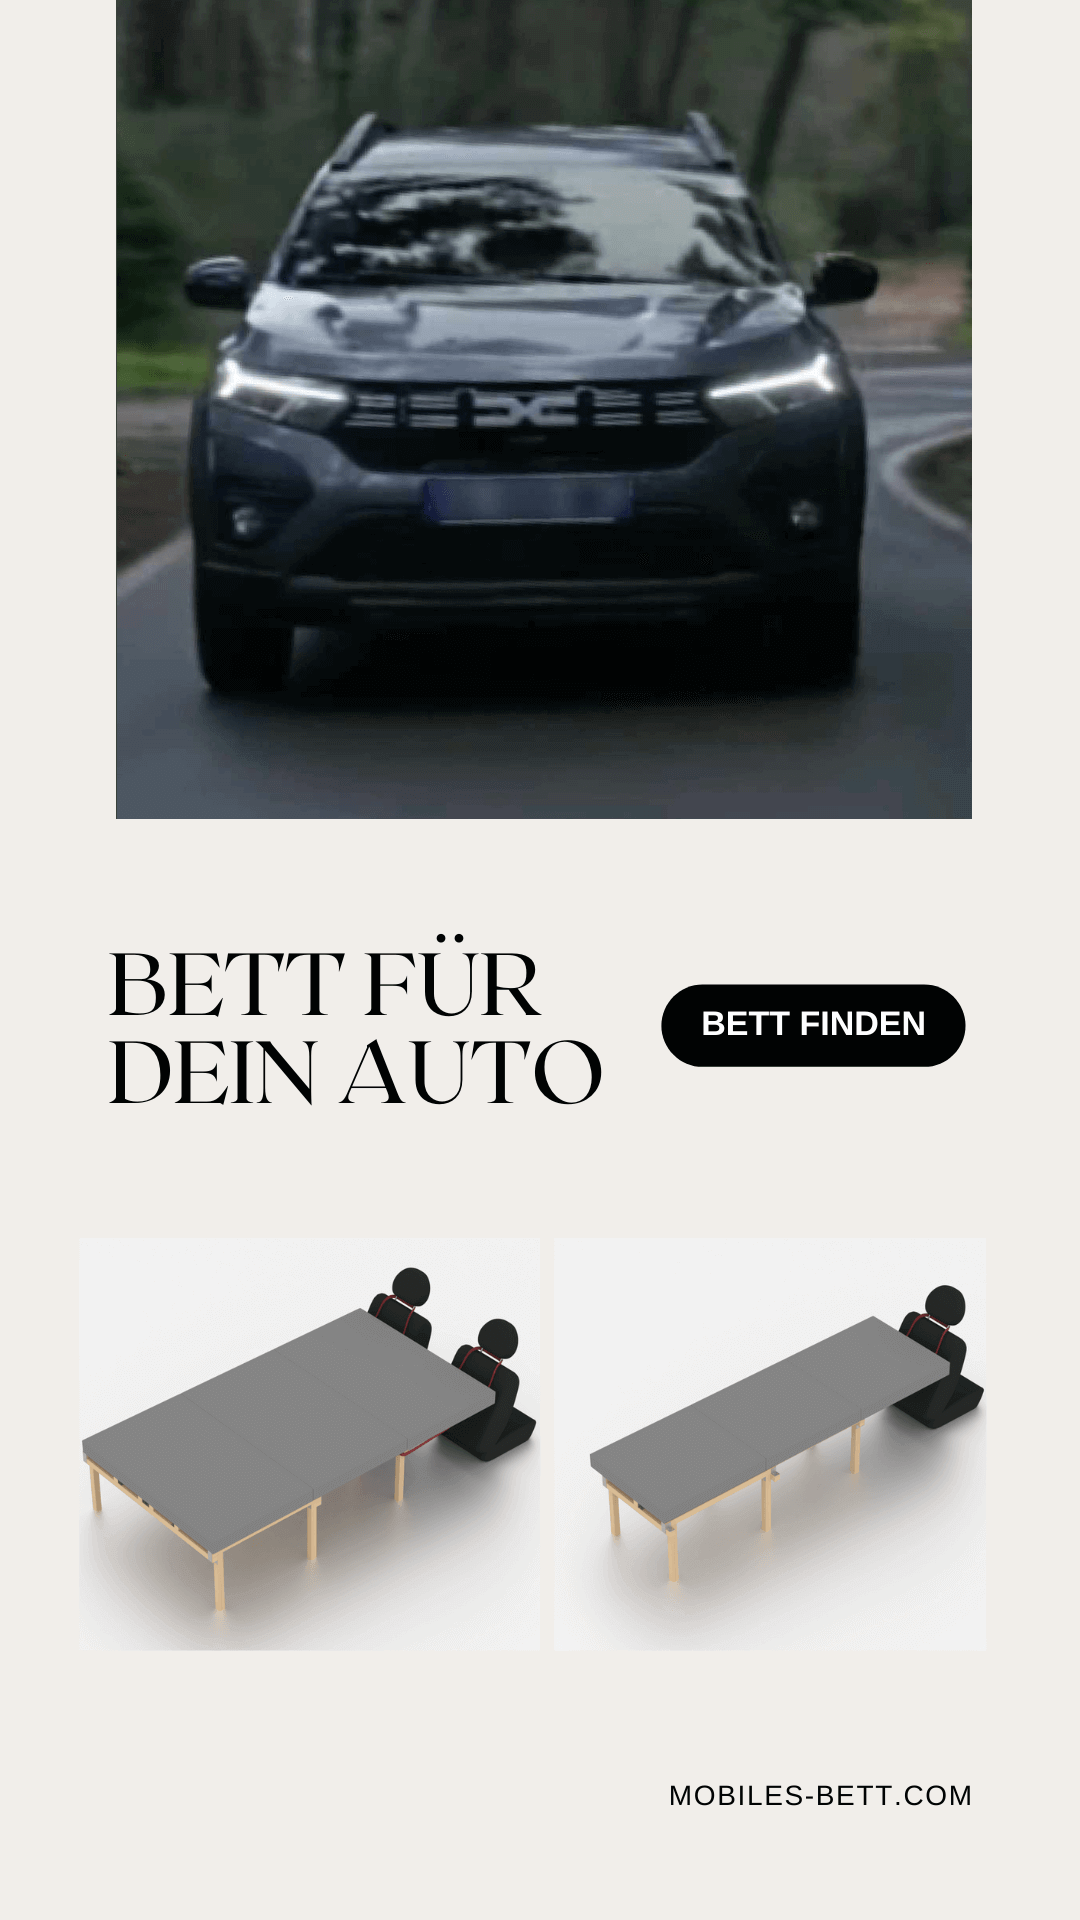 Bett für Dacia Jogger selbst bauen - Anleitung für Einzel-, Doppel- und Kombi-Bett - becomePro